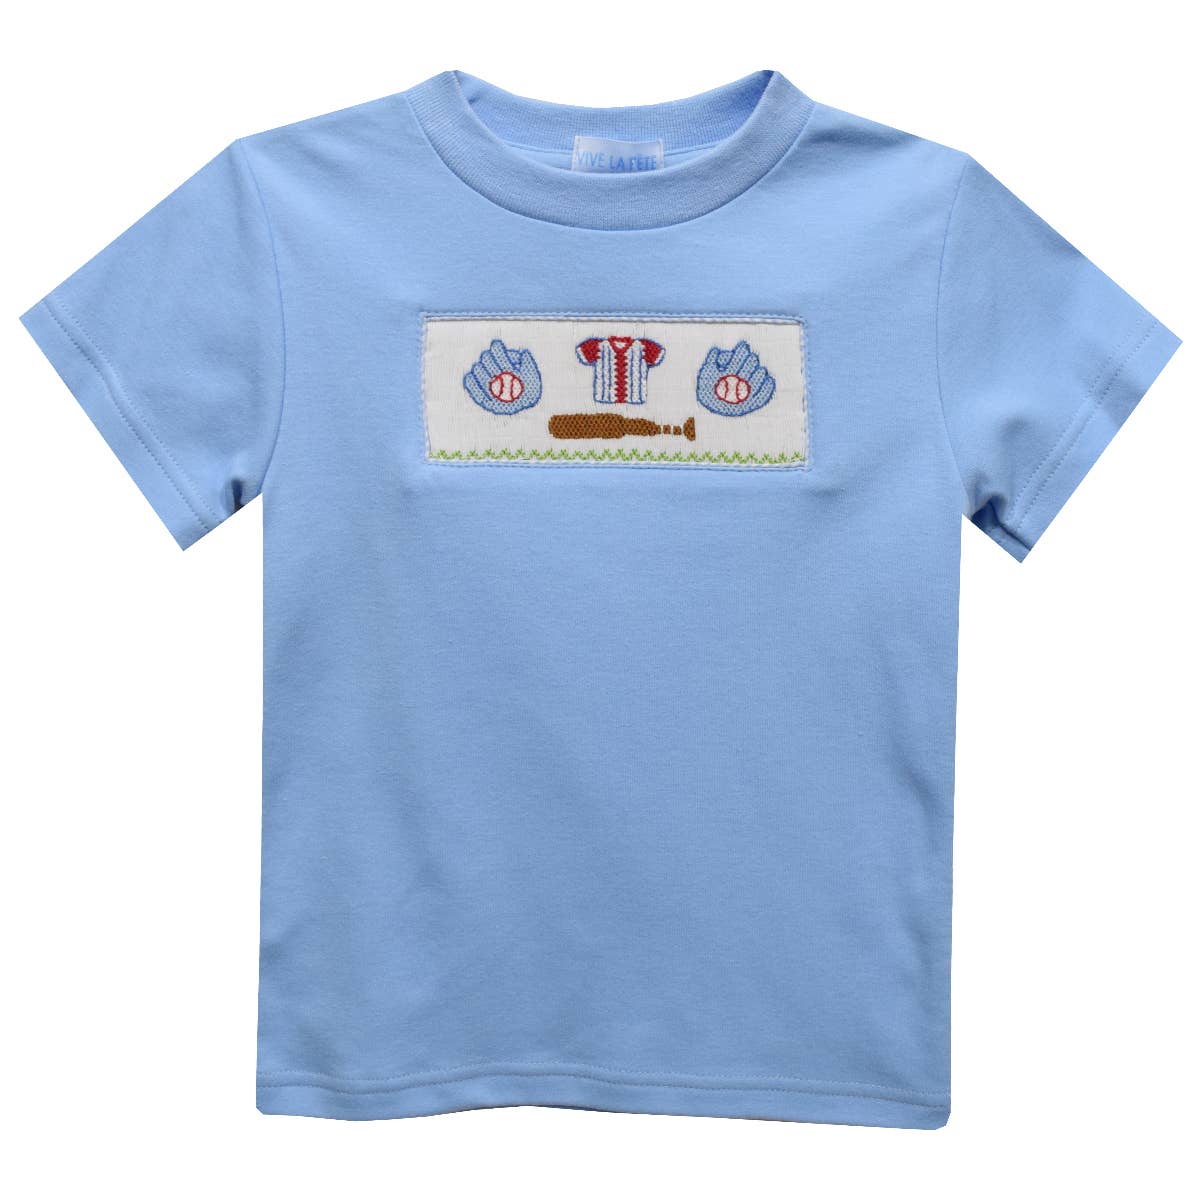 Vive La Fete - Baseball Smocked Knit Short Sleeve Boys T-Shirt